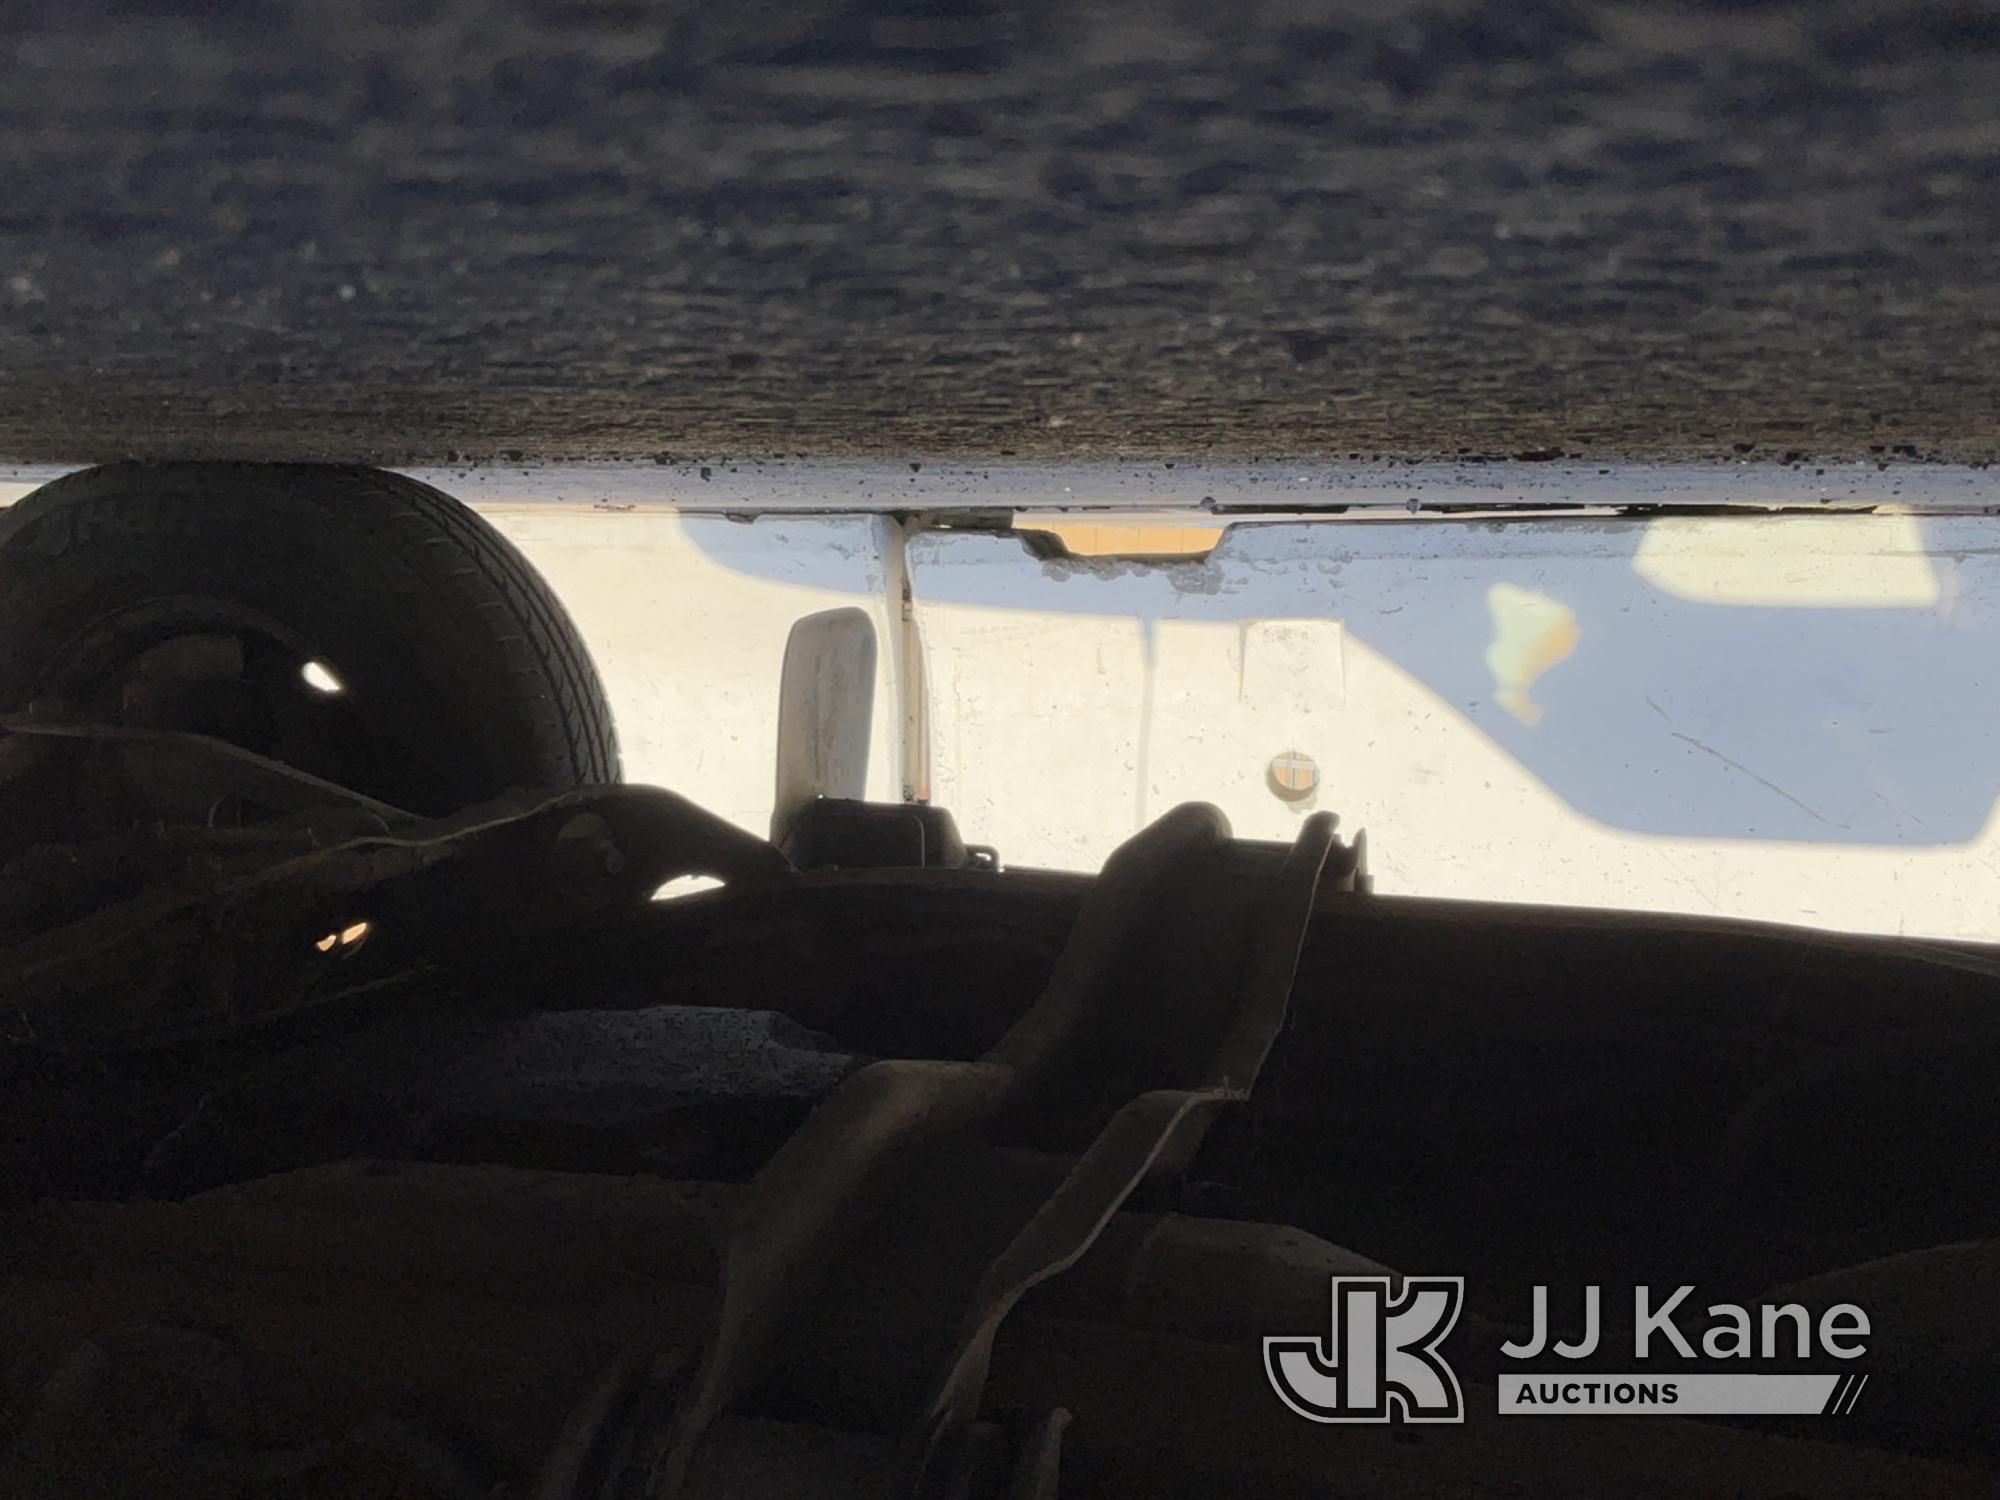 (Jurupa Valley, CA) 1997 Ford Ranger Regular Cab Pickup 2-DR Runs & Moves, Missing Driver Door